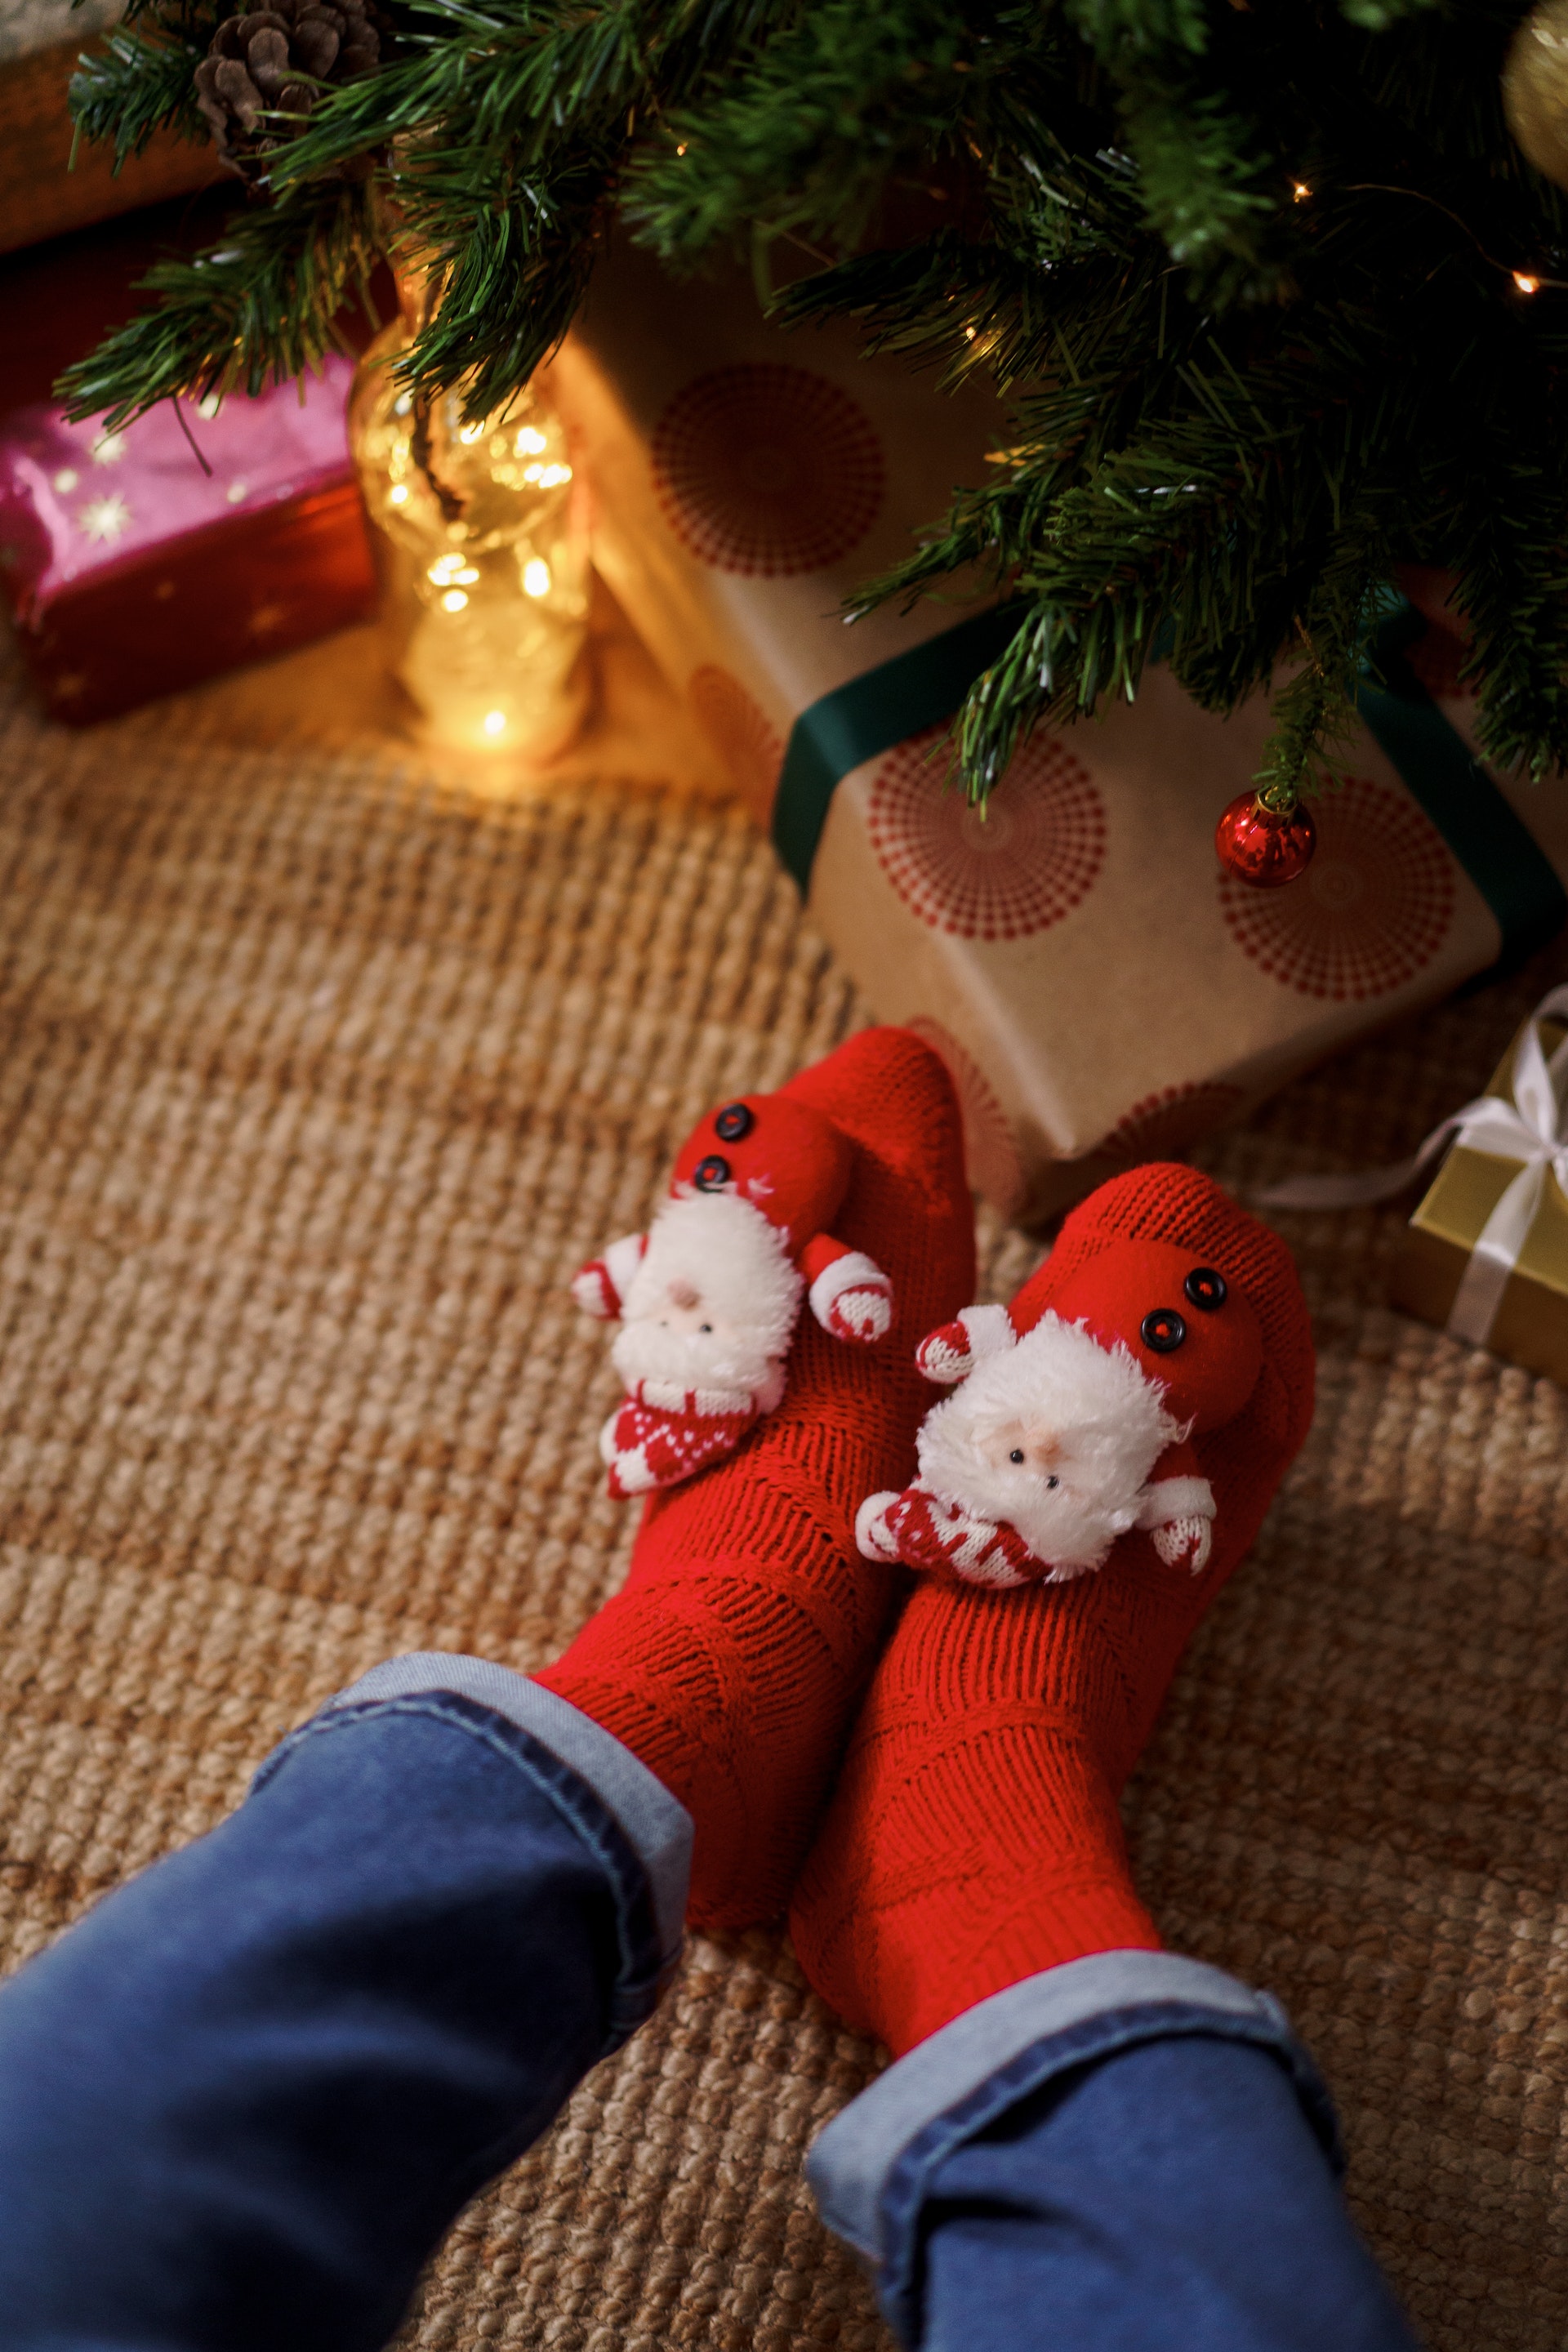 Una persona con calcetines navideños | Fuente: Pexels